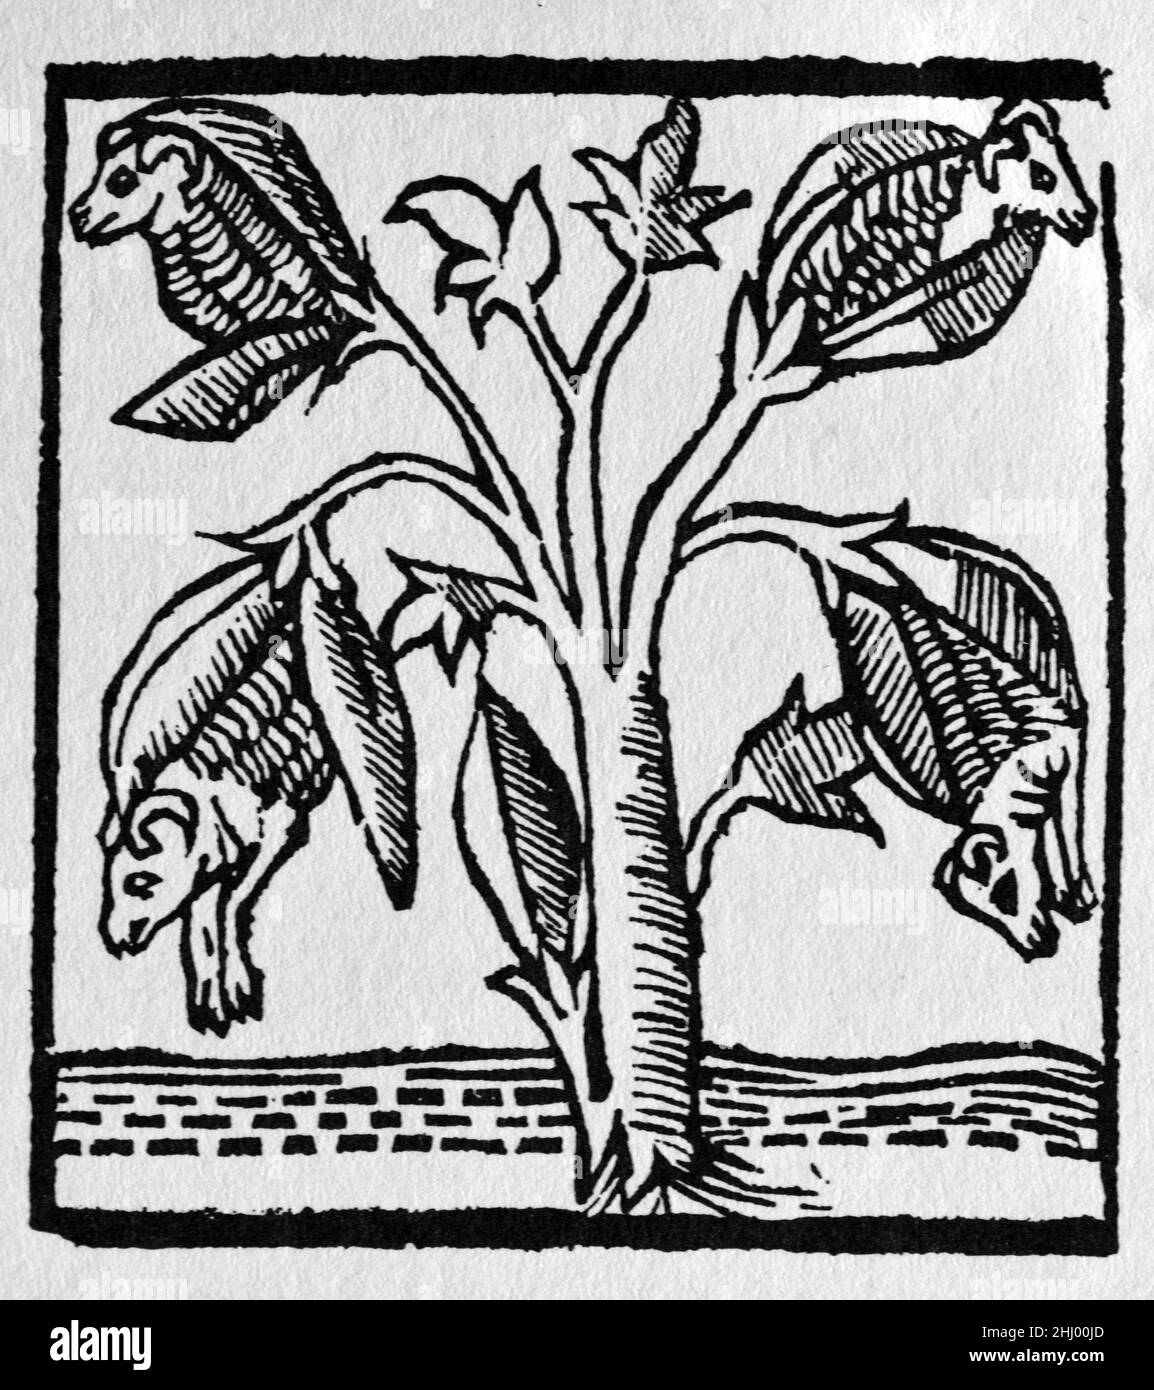 Fantastisches Bild einer Baumwollpflanze, wie es Sir John Mandeville auf den Reisen von John Mandeville wahrnahm. Nach Mandeville, als die Früchte reifen, öffnete sich das y, um Lämmer zu offenbaren. Wenn die Äste nach unten gebeugt wurden, konnten sich die Lämmer auf dem darunter liegenden Gras ernähren. c16th Vintage Woodcut Print, Engraving oder Illustration aus einer spanischen Ausgabe von 1521. Stockfoto